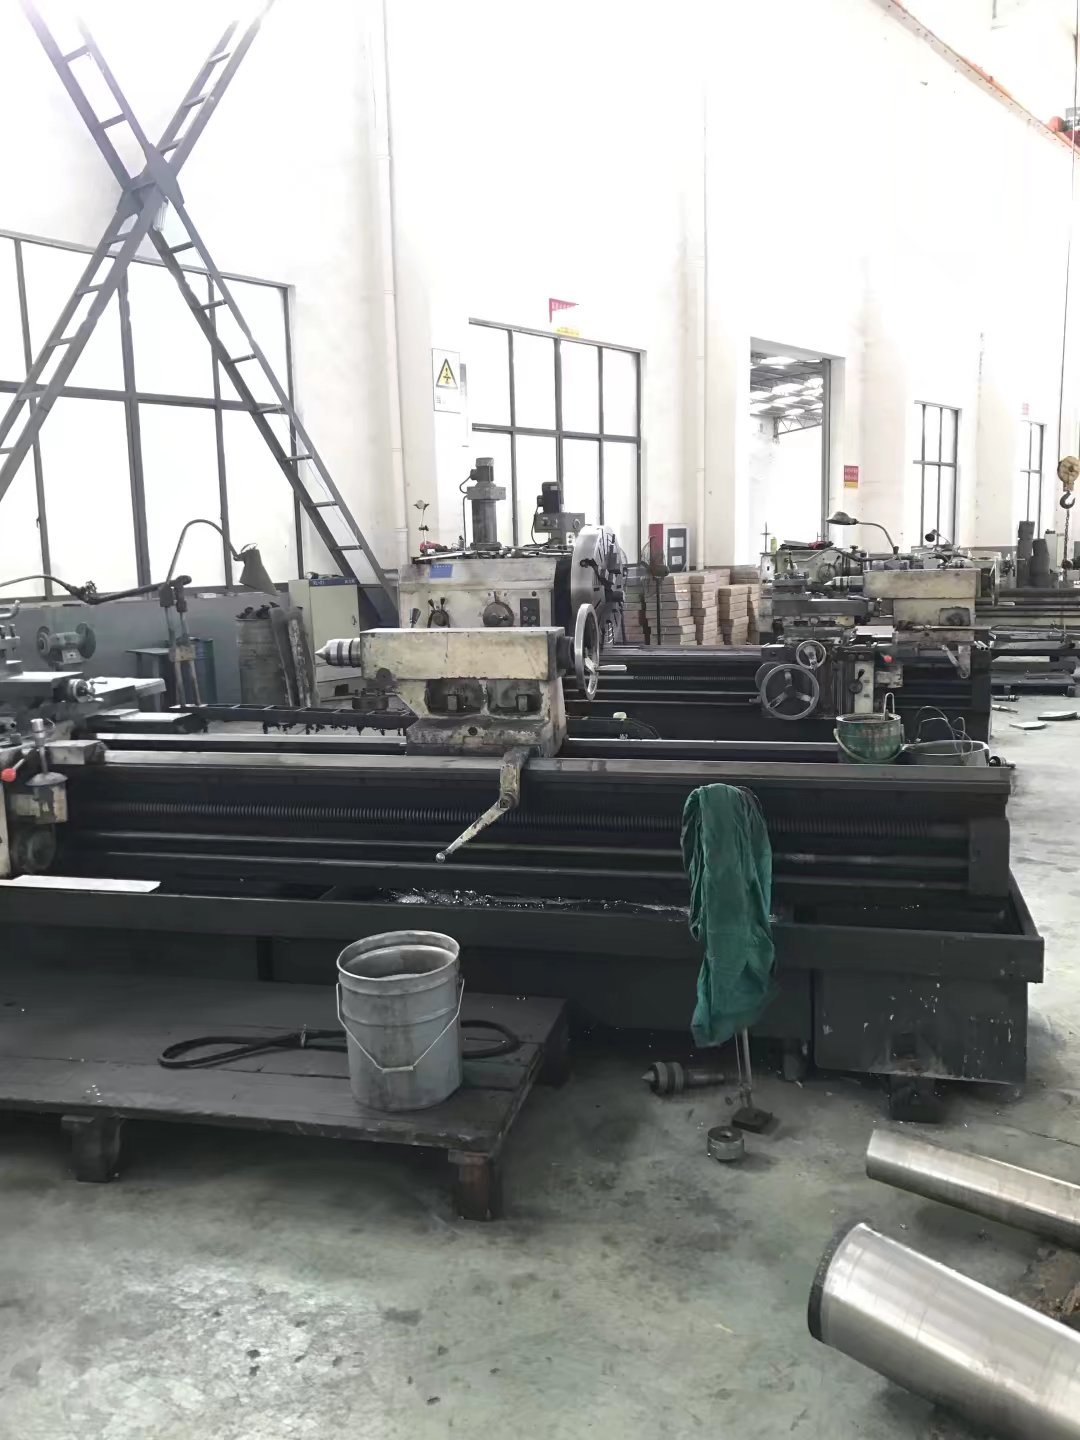 湖南省N07718圆钢C276钢管厂机械性能